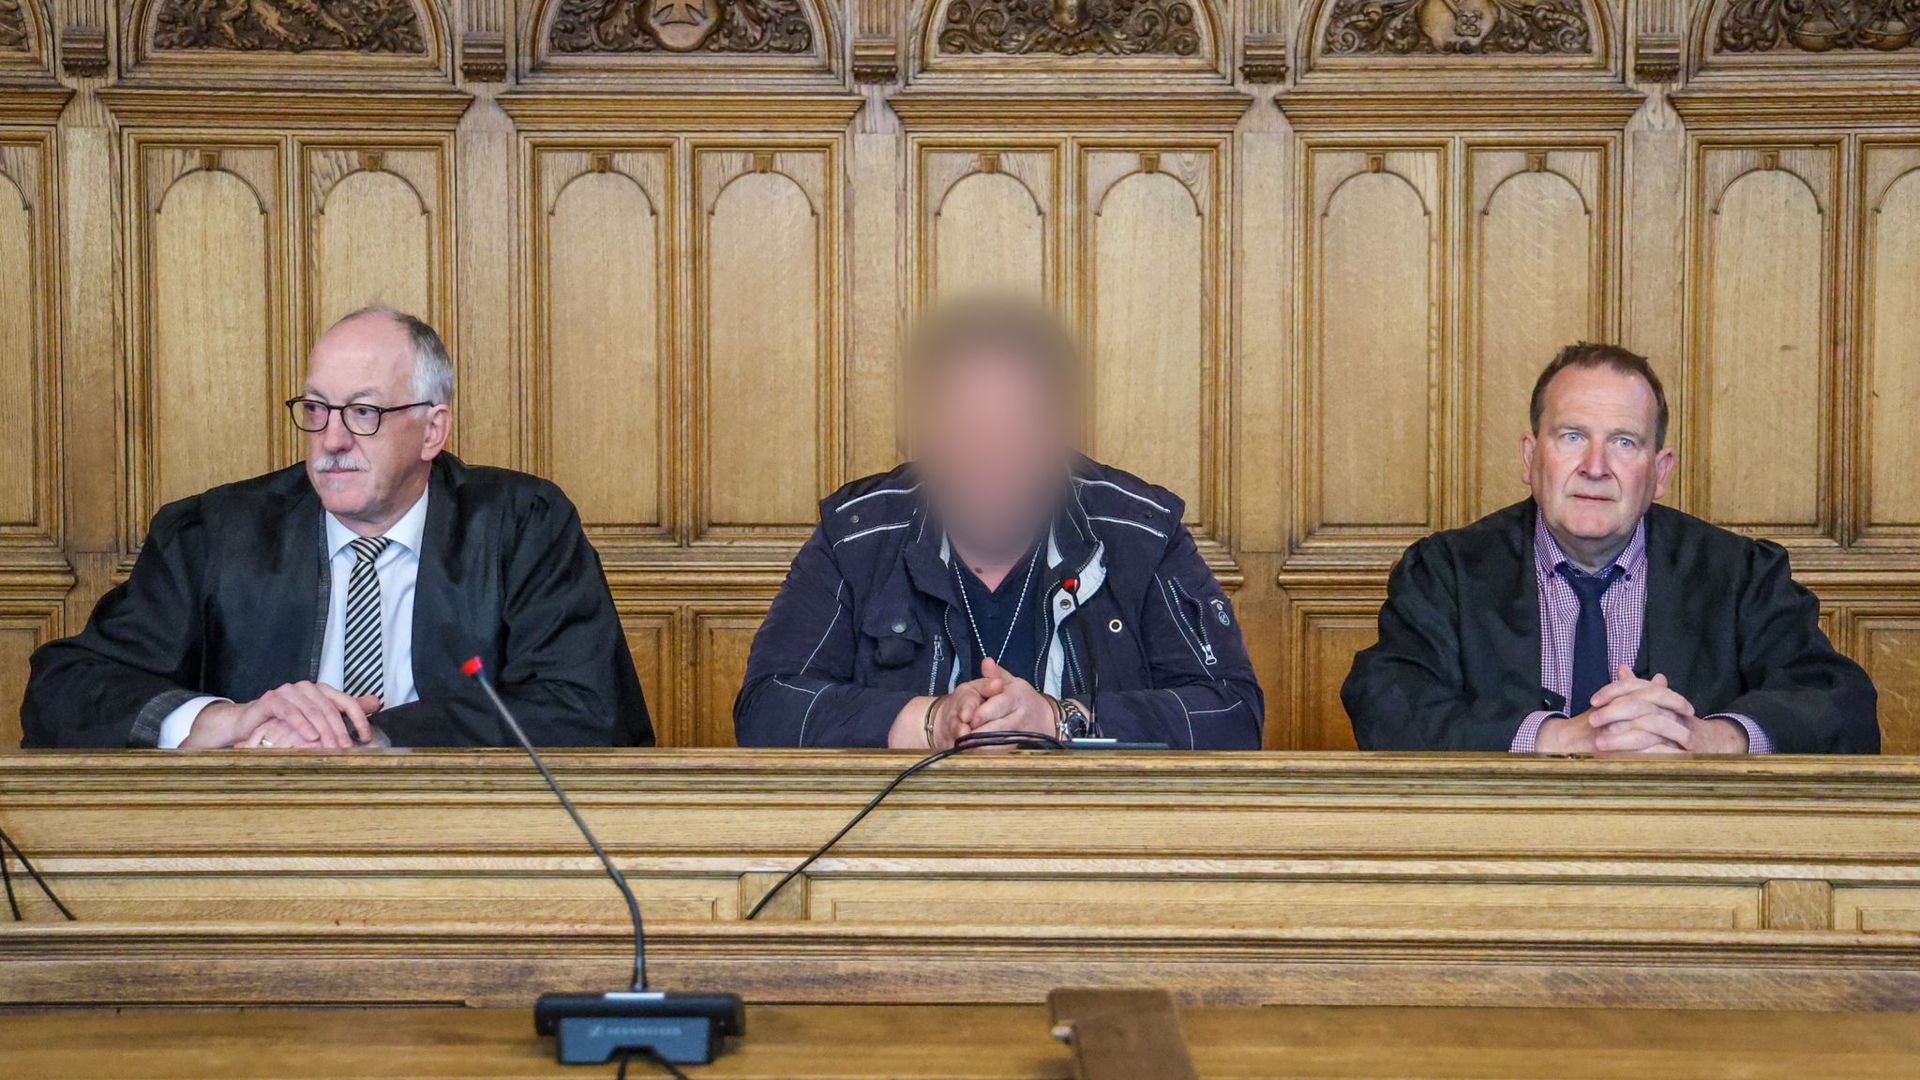 Der Angeklagte (M) sitzt vor der Urteilsverkündung im Prozess wegen Mordes im Landgericht Bremen zwischen seinen Verteidigern.